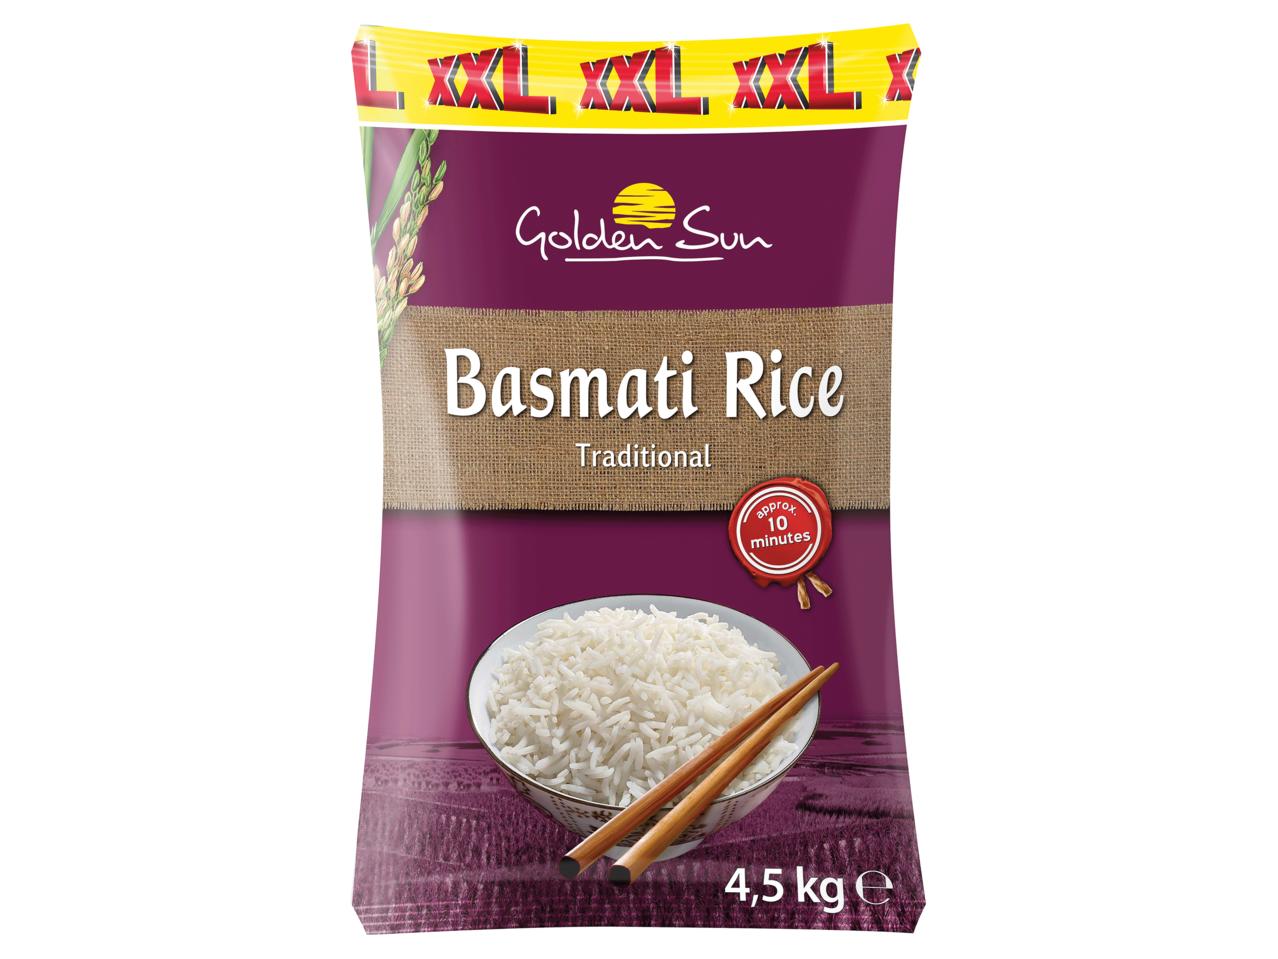 GOLDEN SUN Basmati Rice